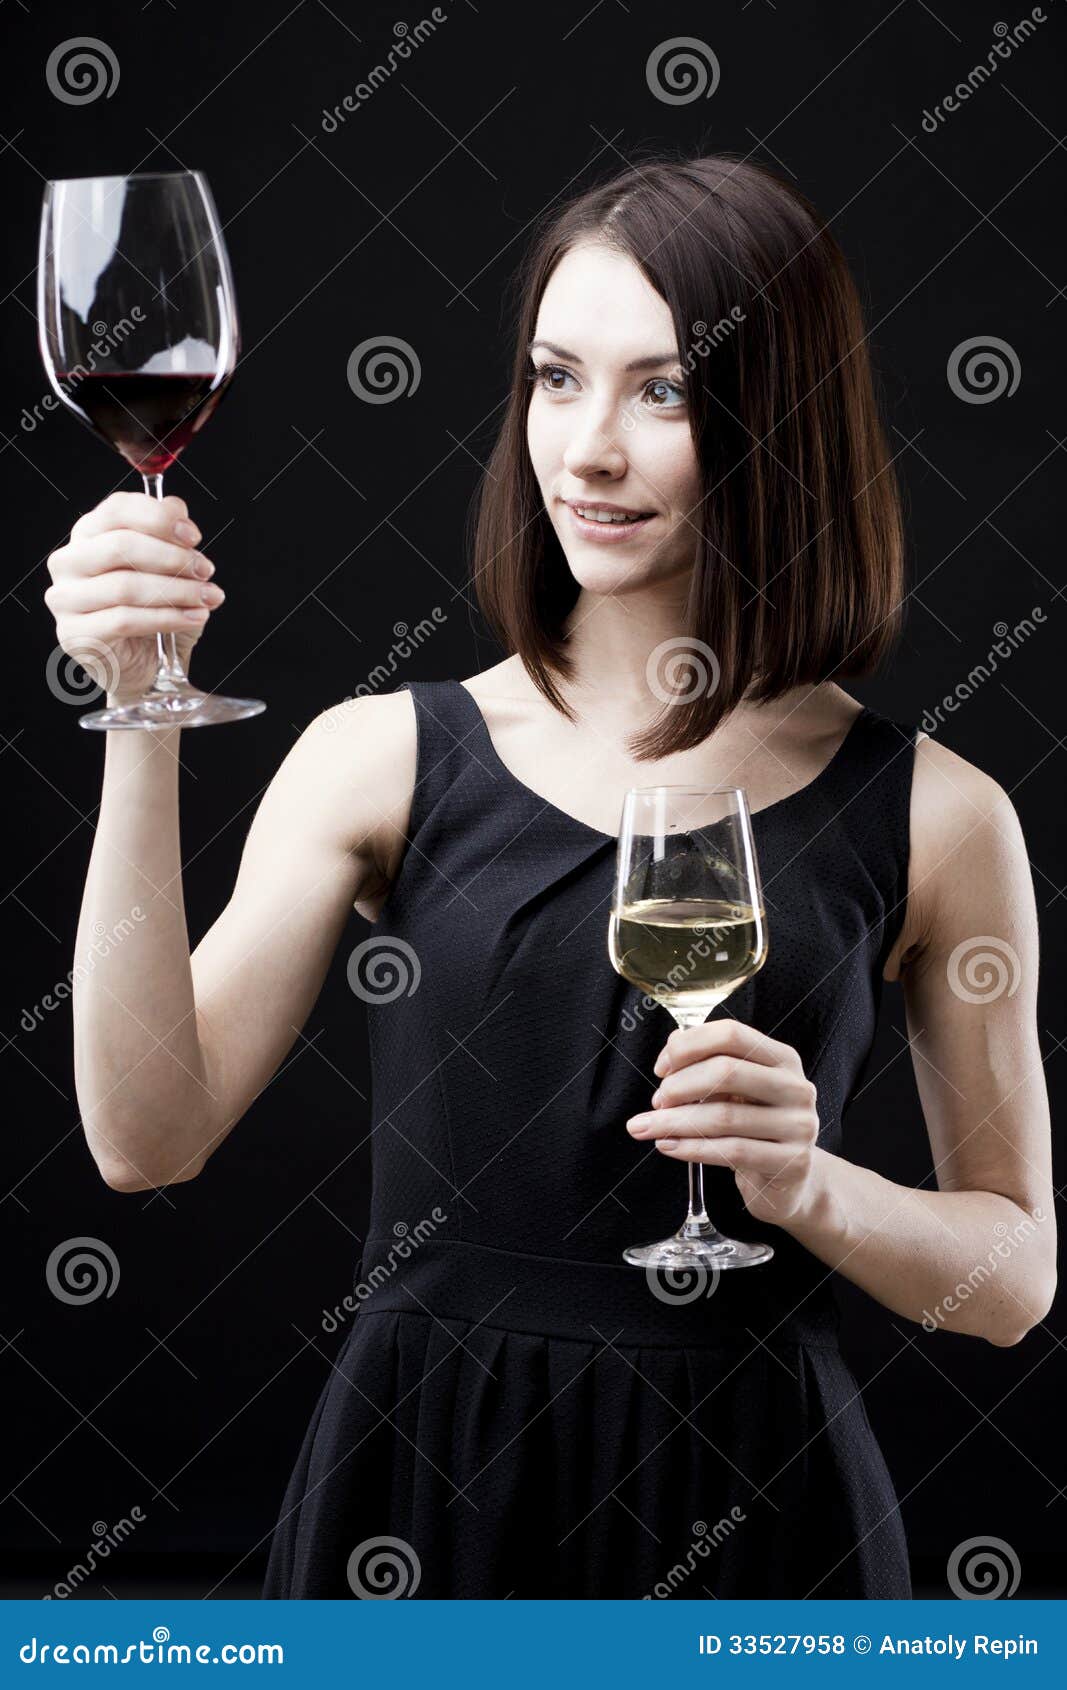 Девушка держит бокал. Человек с бокалом вина референс. Рука держит бокал. Девушка держит бокал в руке. Вина перед мужем